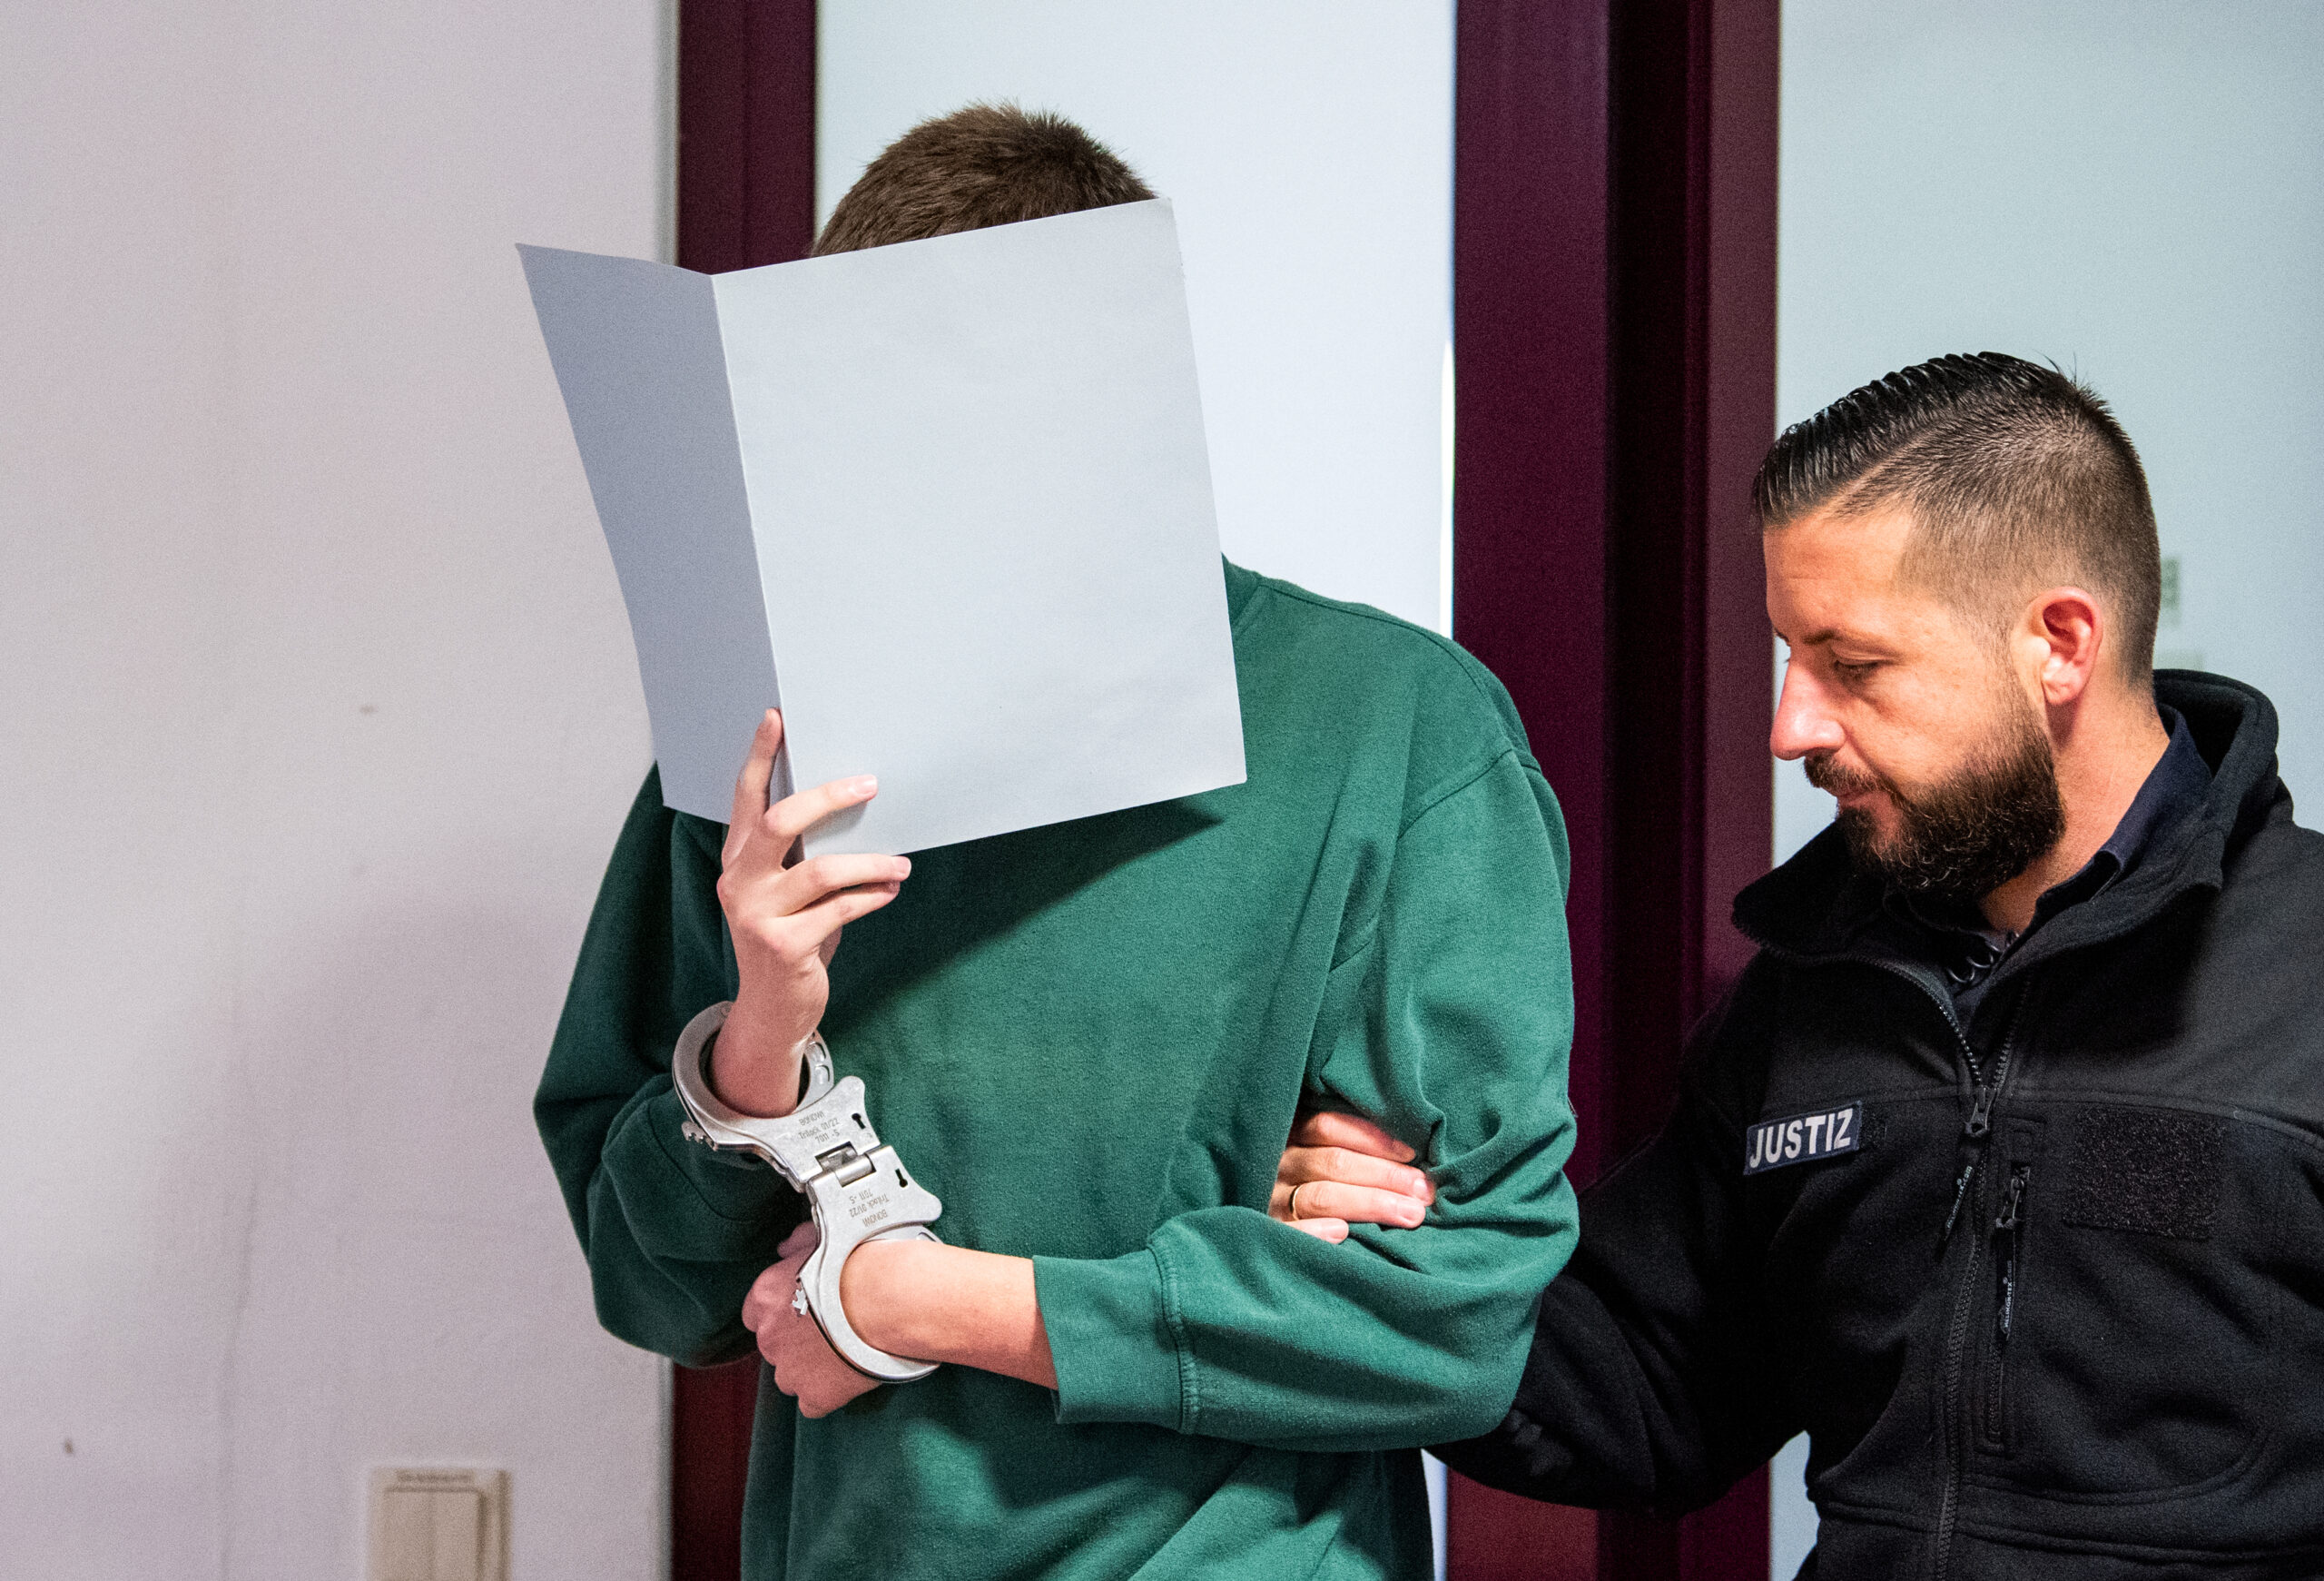 Der 18-jährige Angeklagte hielt sich vor Gericht eine Mappe vors Gesicht.